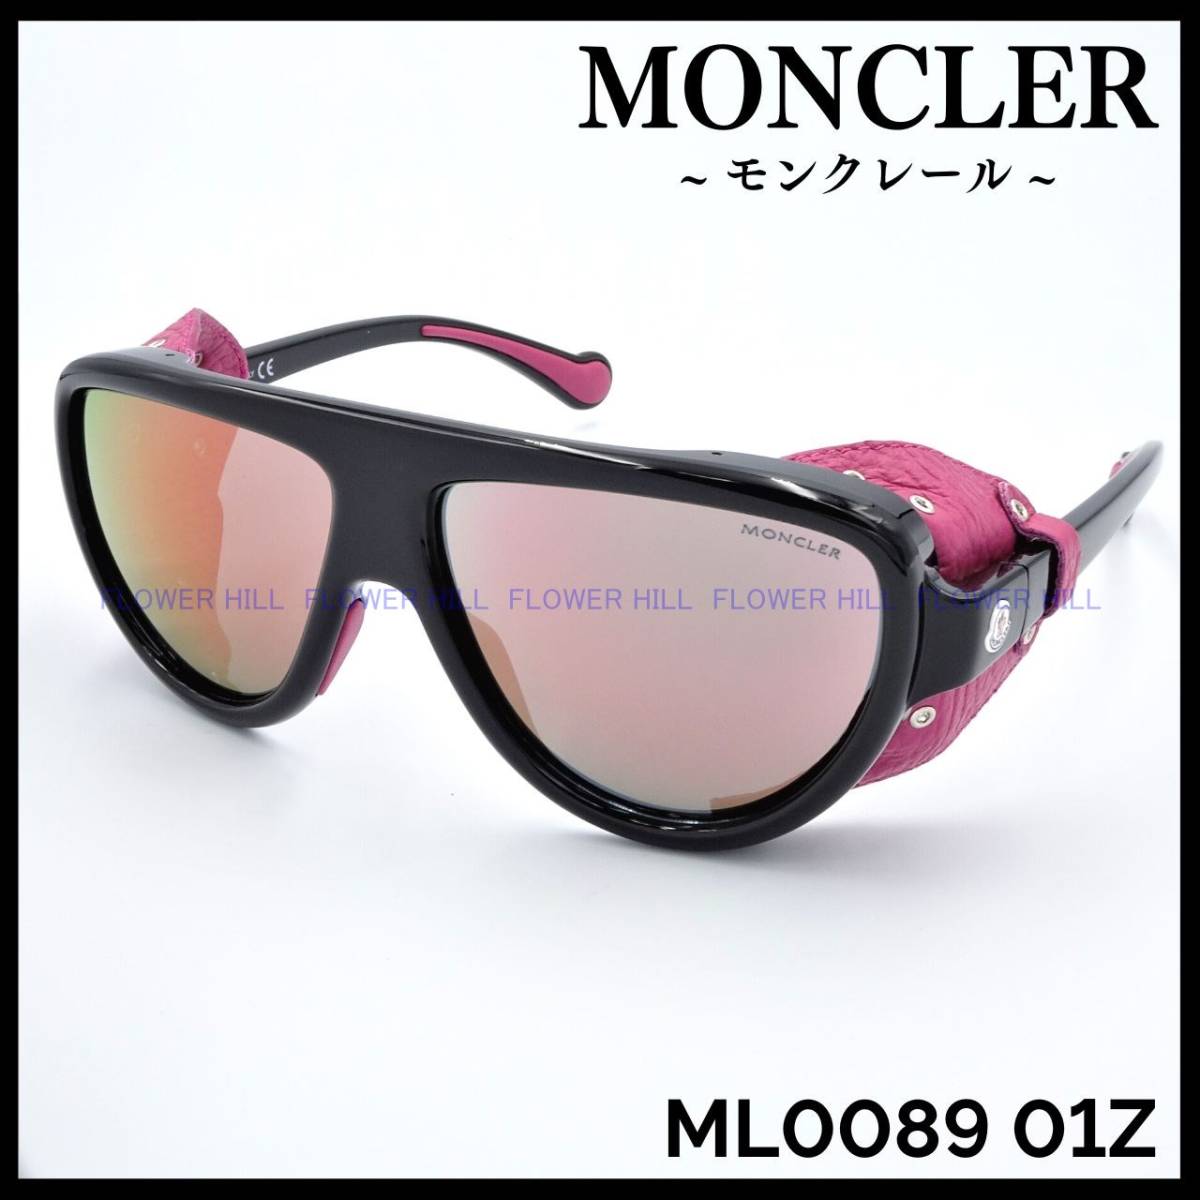 【訳あり特価】 モンクレール MONCLER サングラス ML0089 01Z サイドシールド ブラック/ピンク イタリア製 メンズ レディース 新品